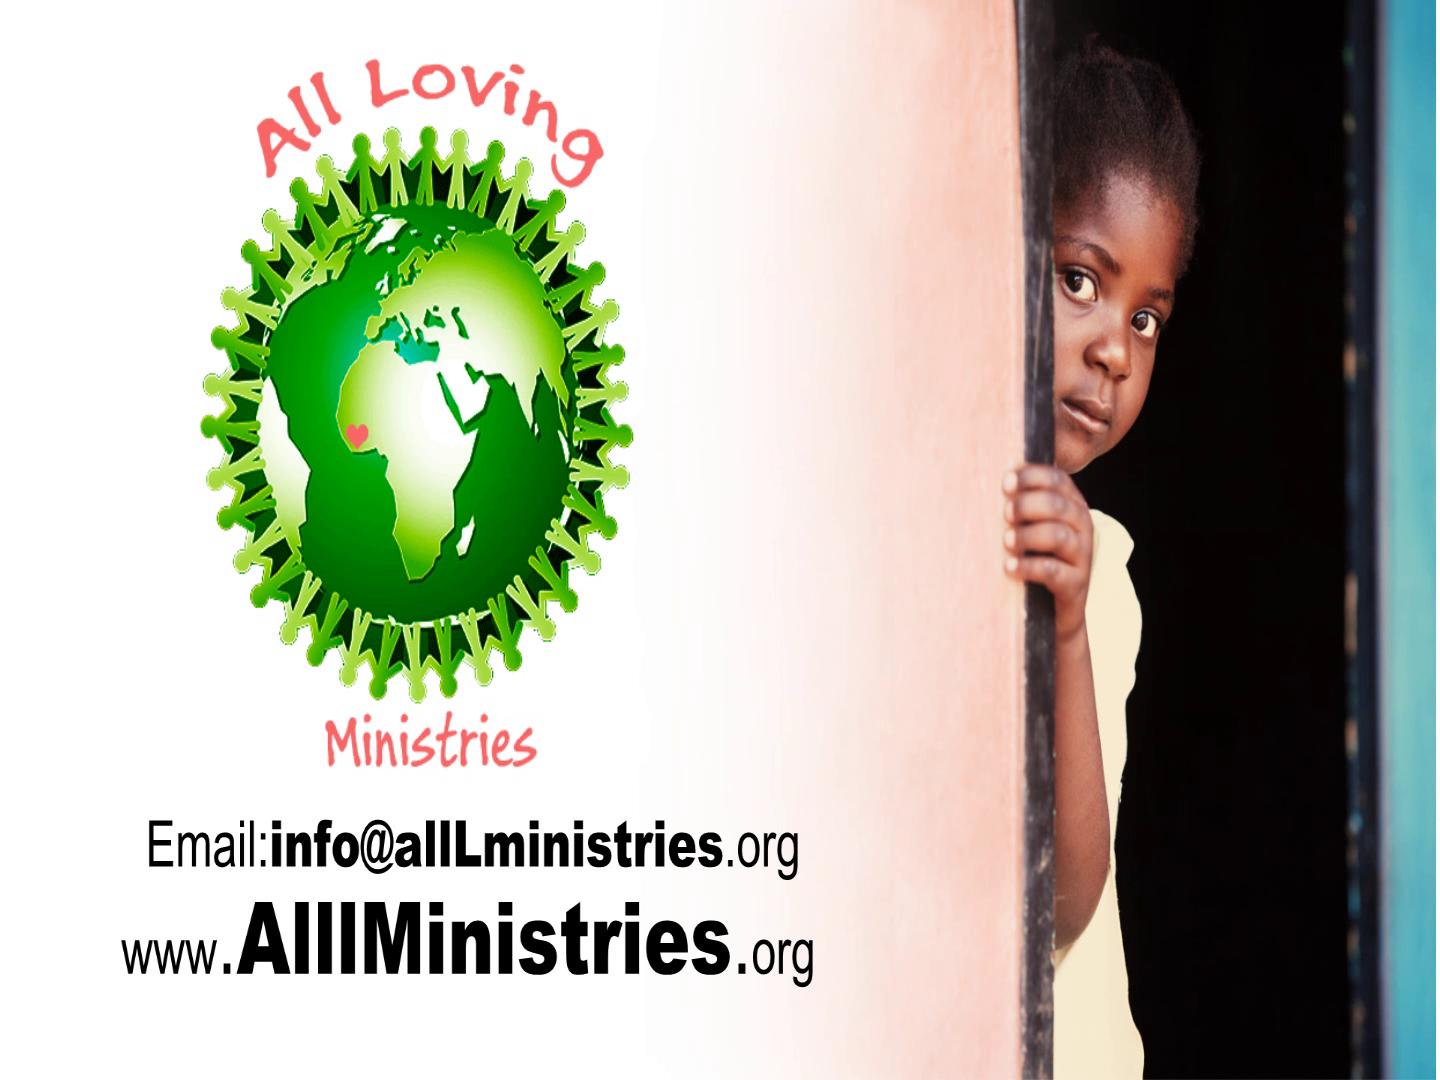 Côte d'Ivoire - All Loving Ministries